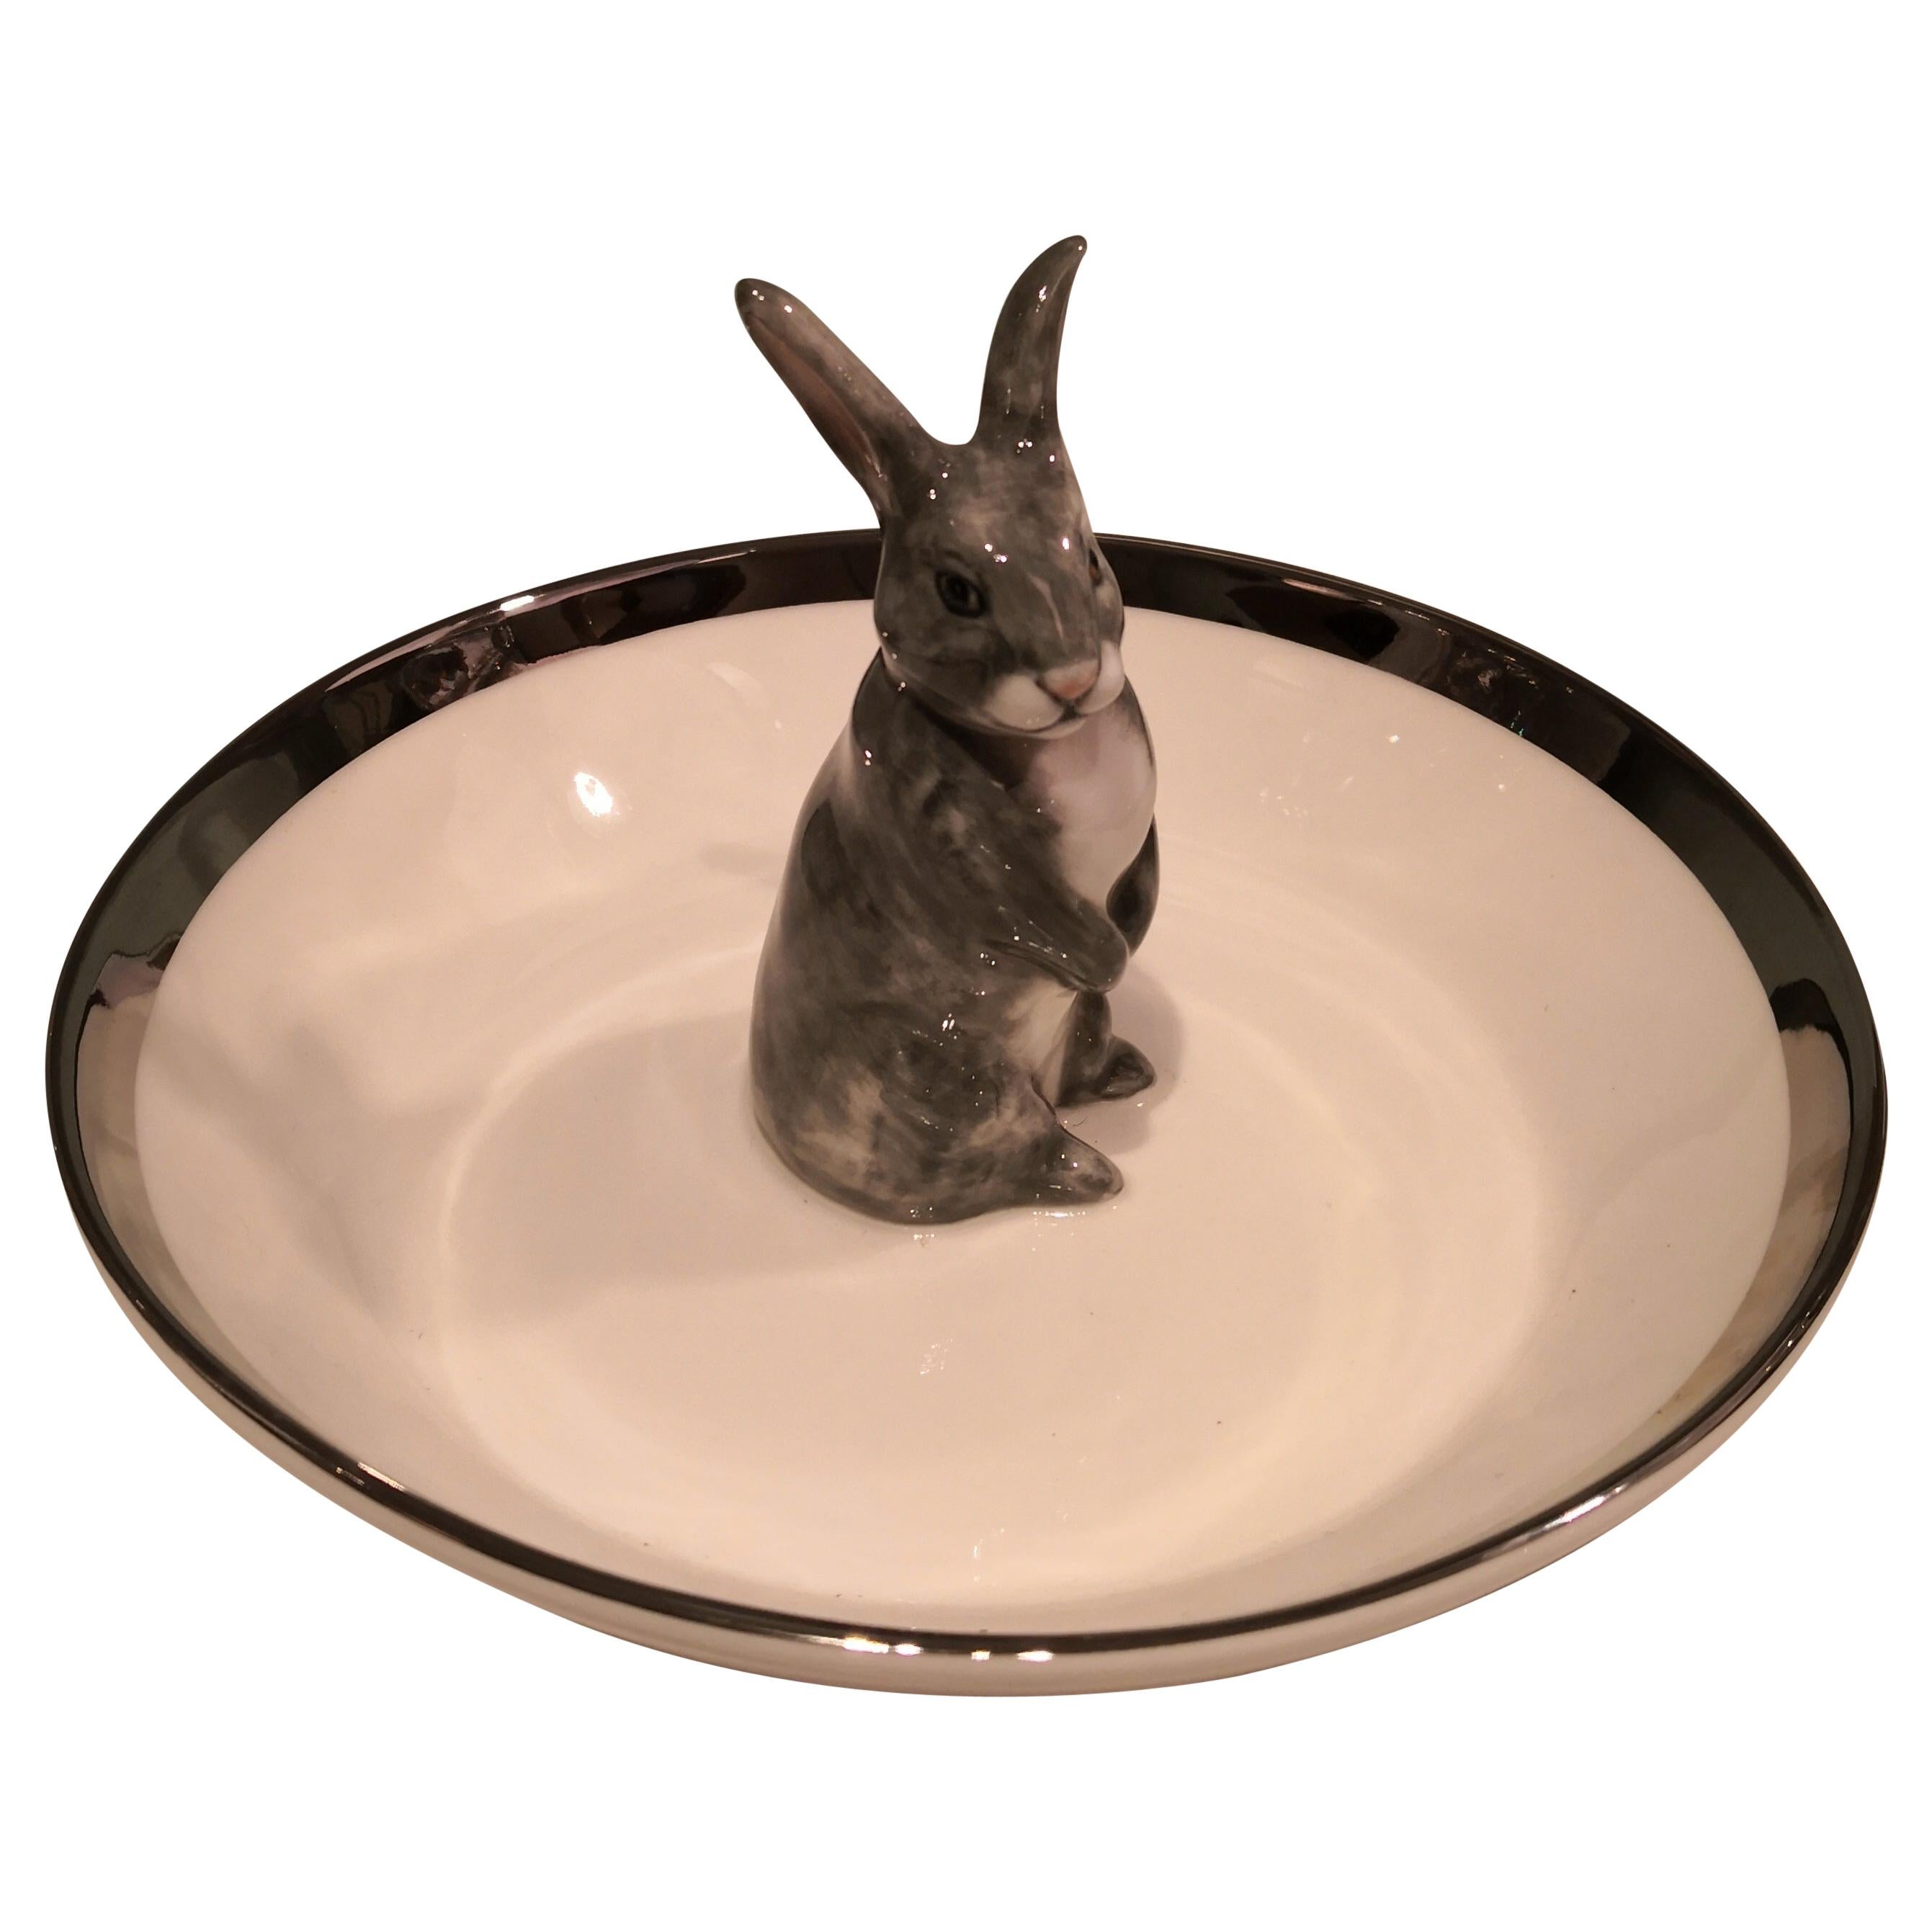 Porcelain Bowl Hand Painted with Rabbit Figure Sofina Boutique Kitzbuehel